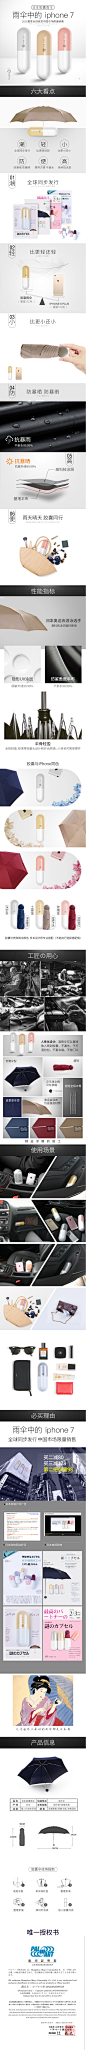 日本胶囊雨伞iPhone7同款最新黑科技产品 买二减80 第二把仅需98-tmall.com天猫